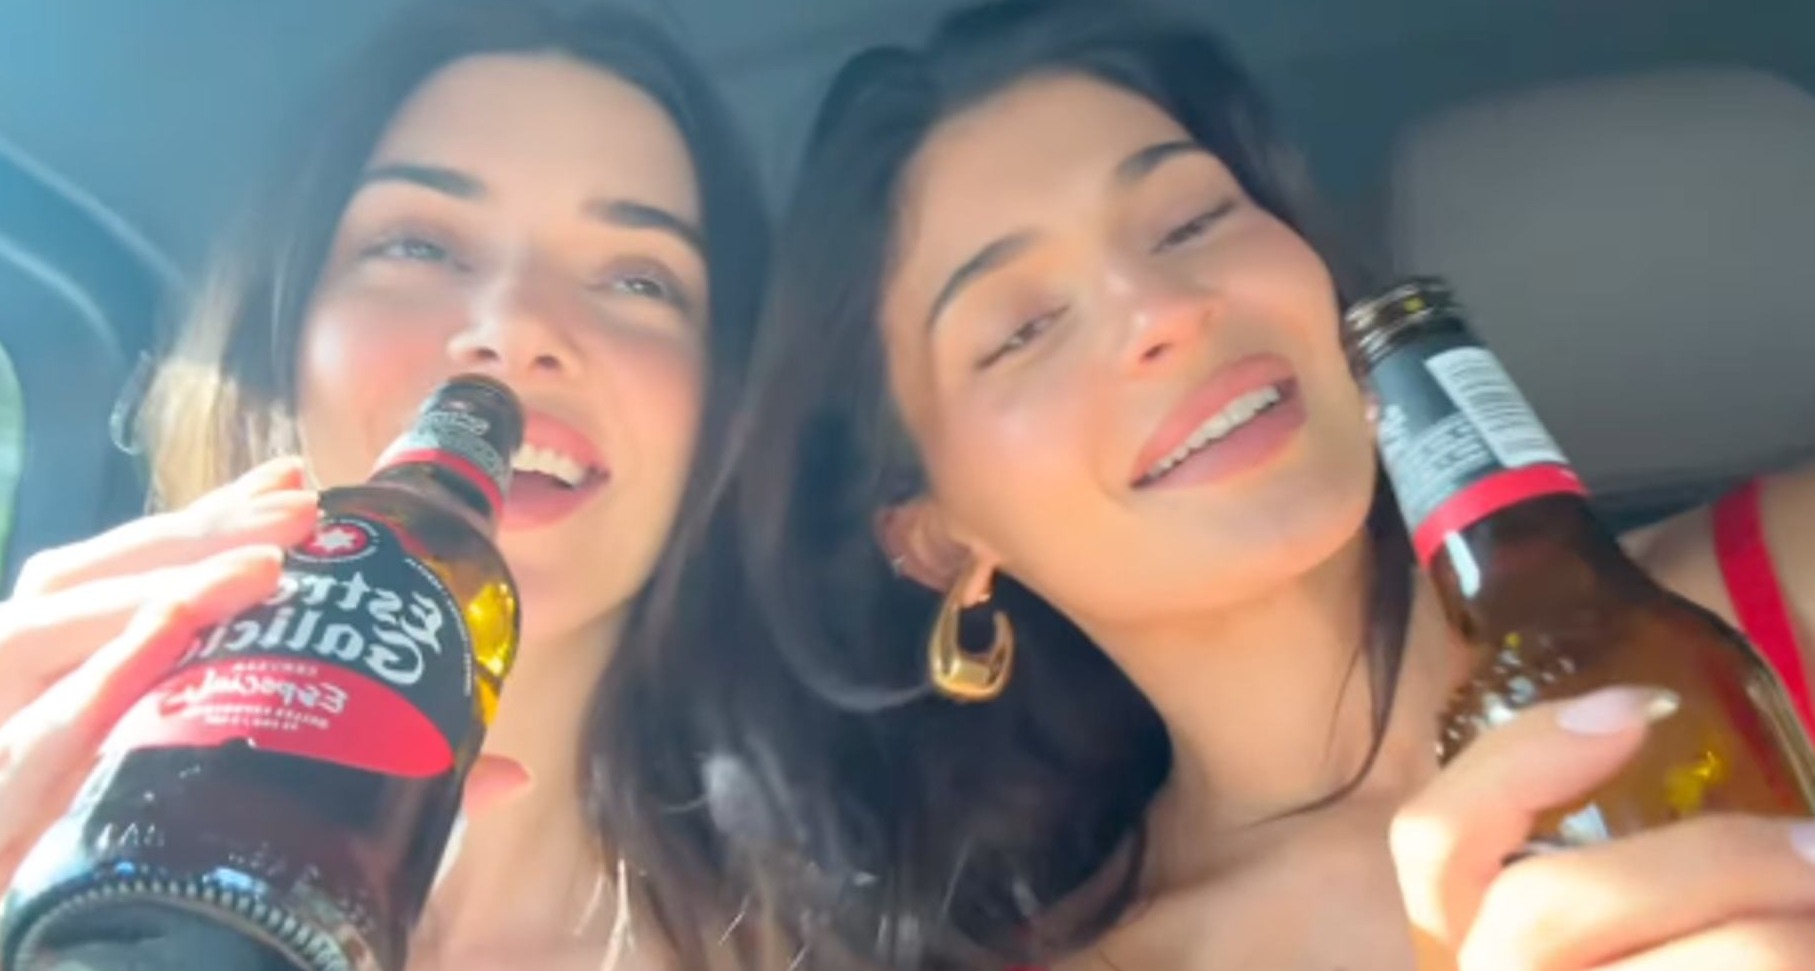 Kylie y Kendall Jenner beben Estrella Galicia